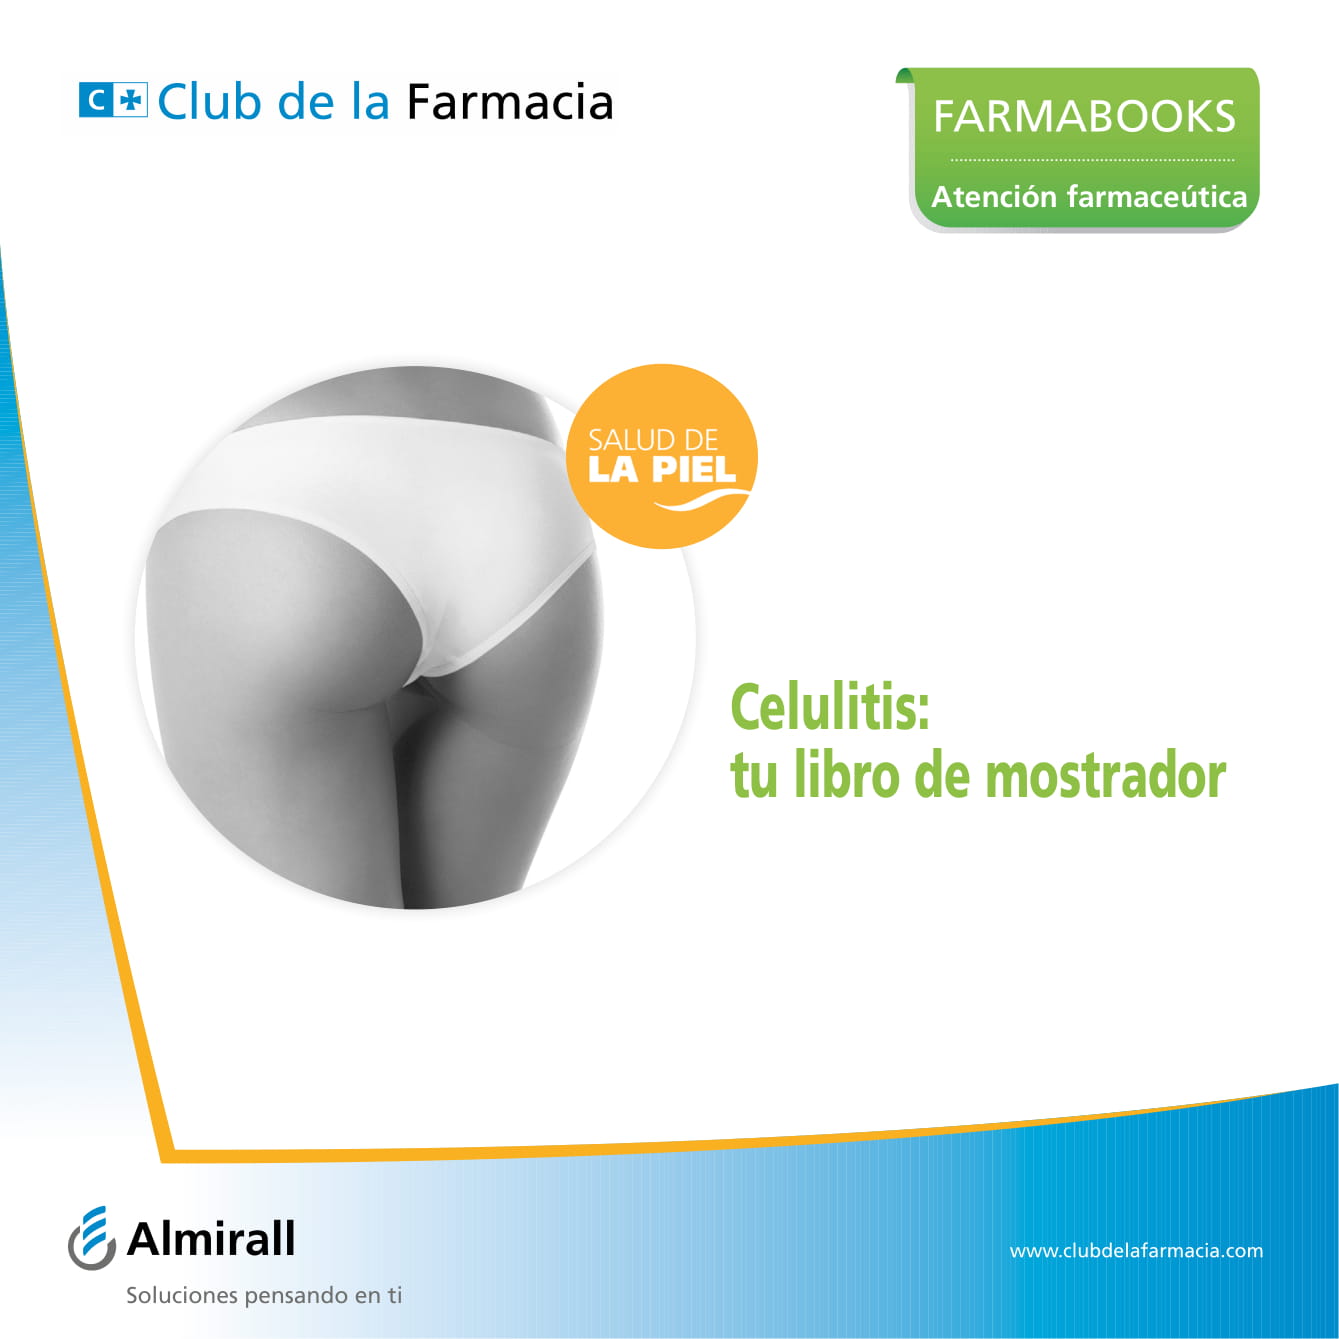 Ebooks-Club de la Farmacia-41.jpg